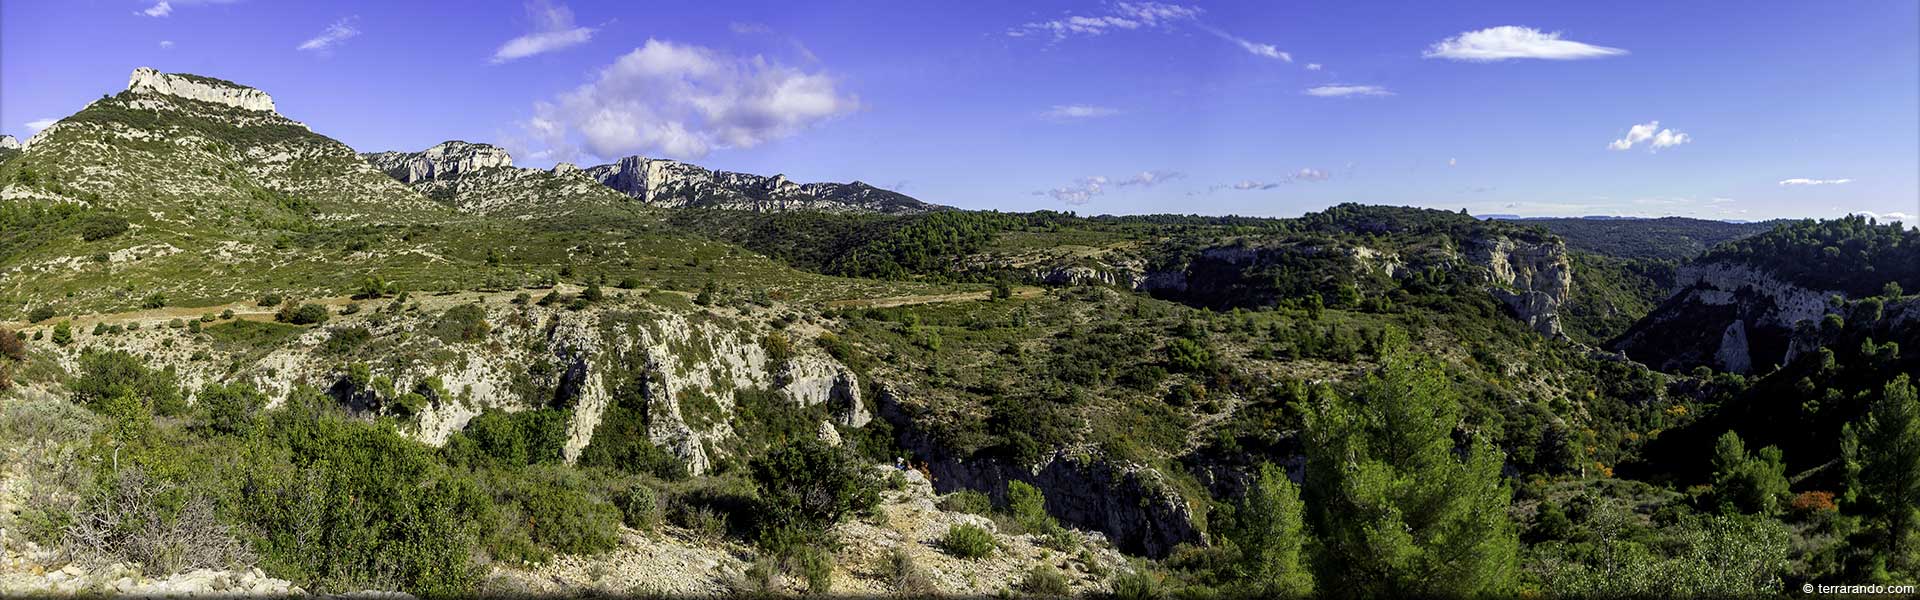 Randonnée des gorges de Régalon et le vallon de la Galère dans le Luberon en Vaucluse